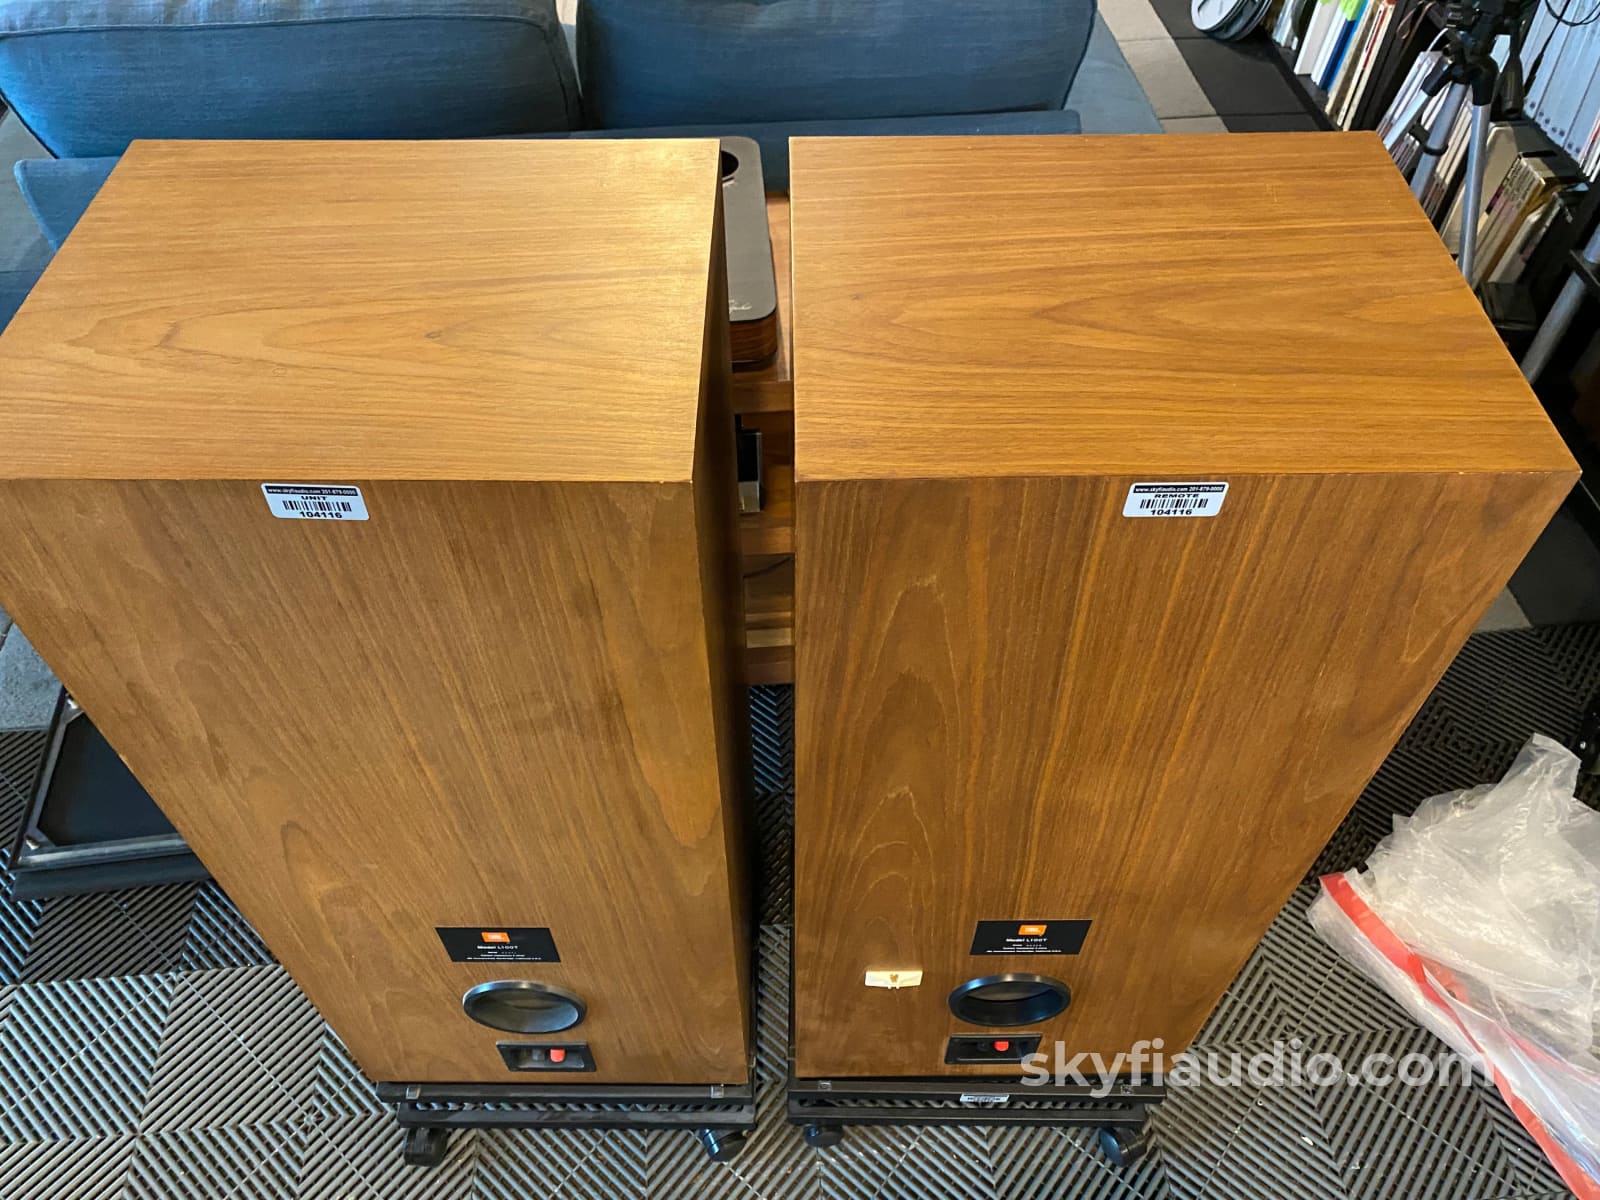 Jbl L100T Vintage Floor Standing Speakers - Super Clean And Restored